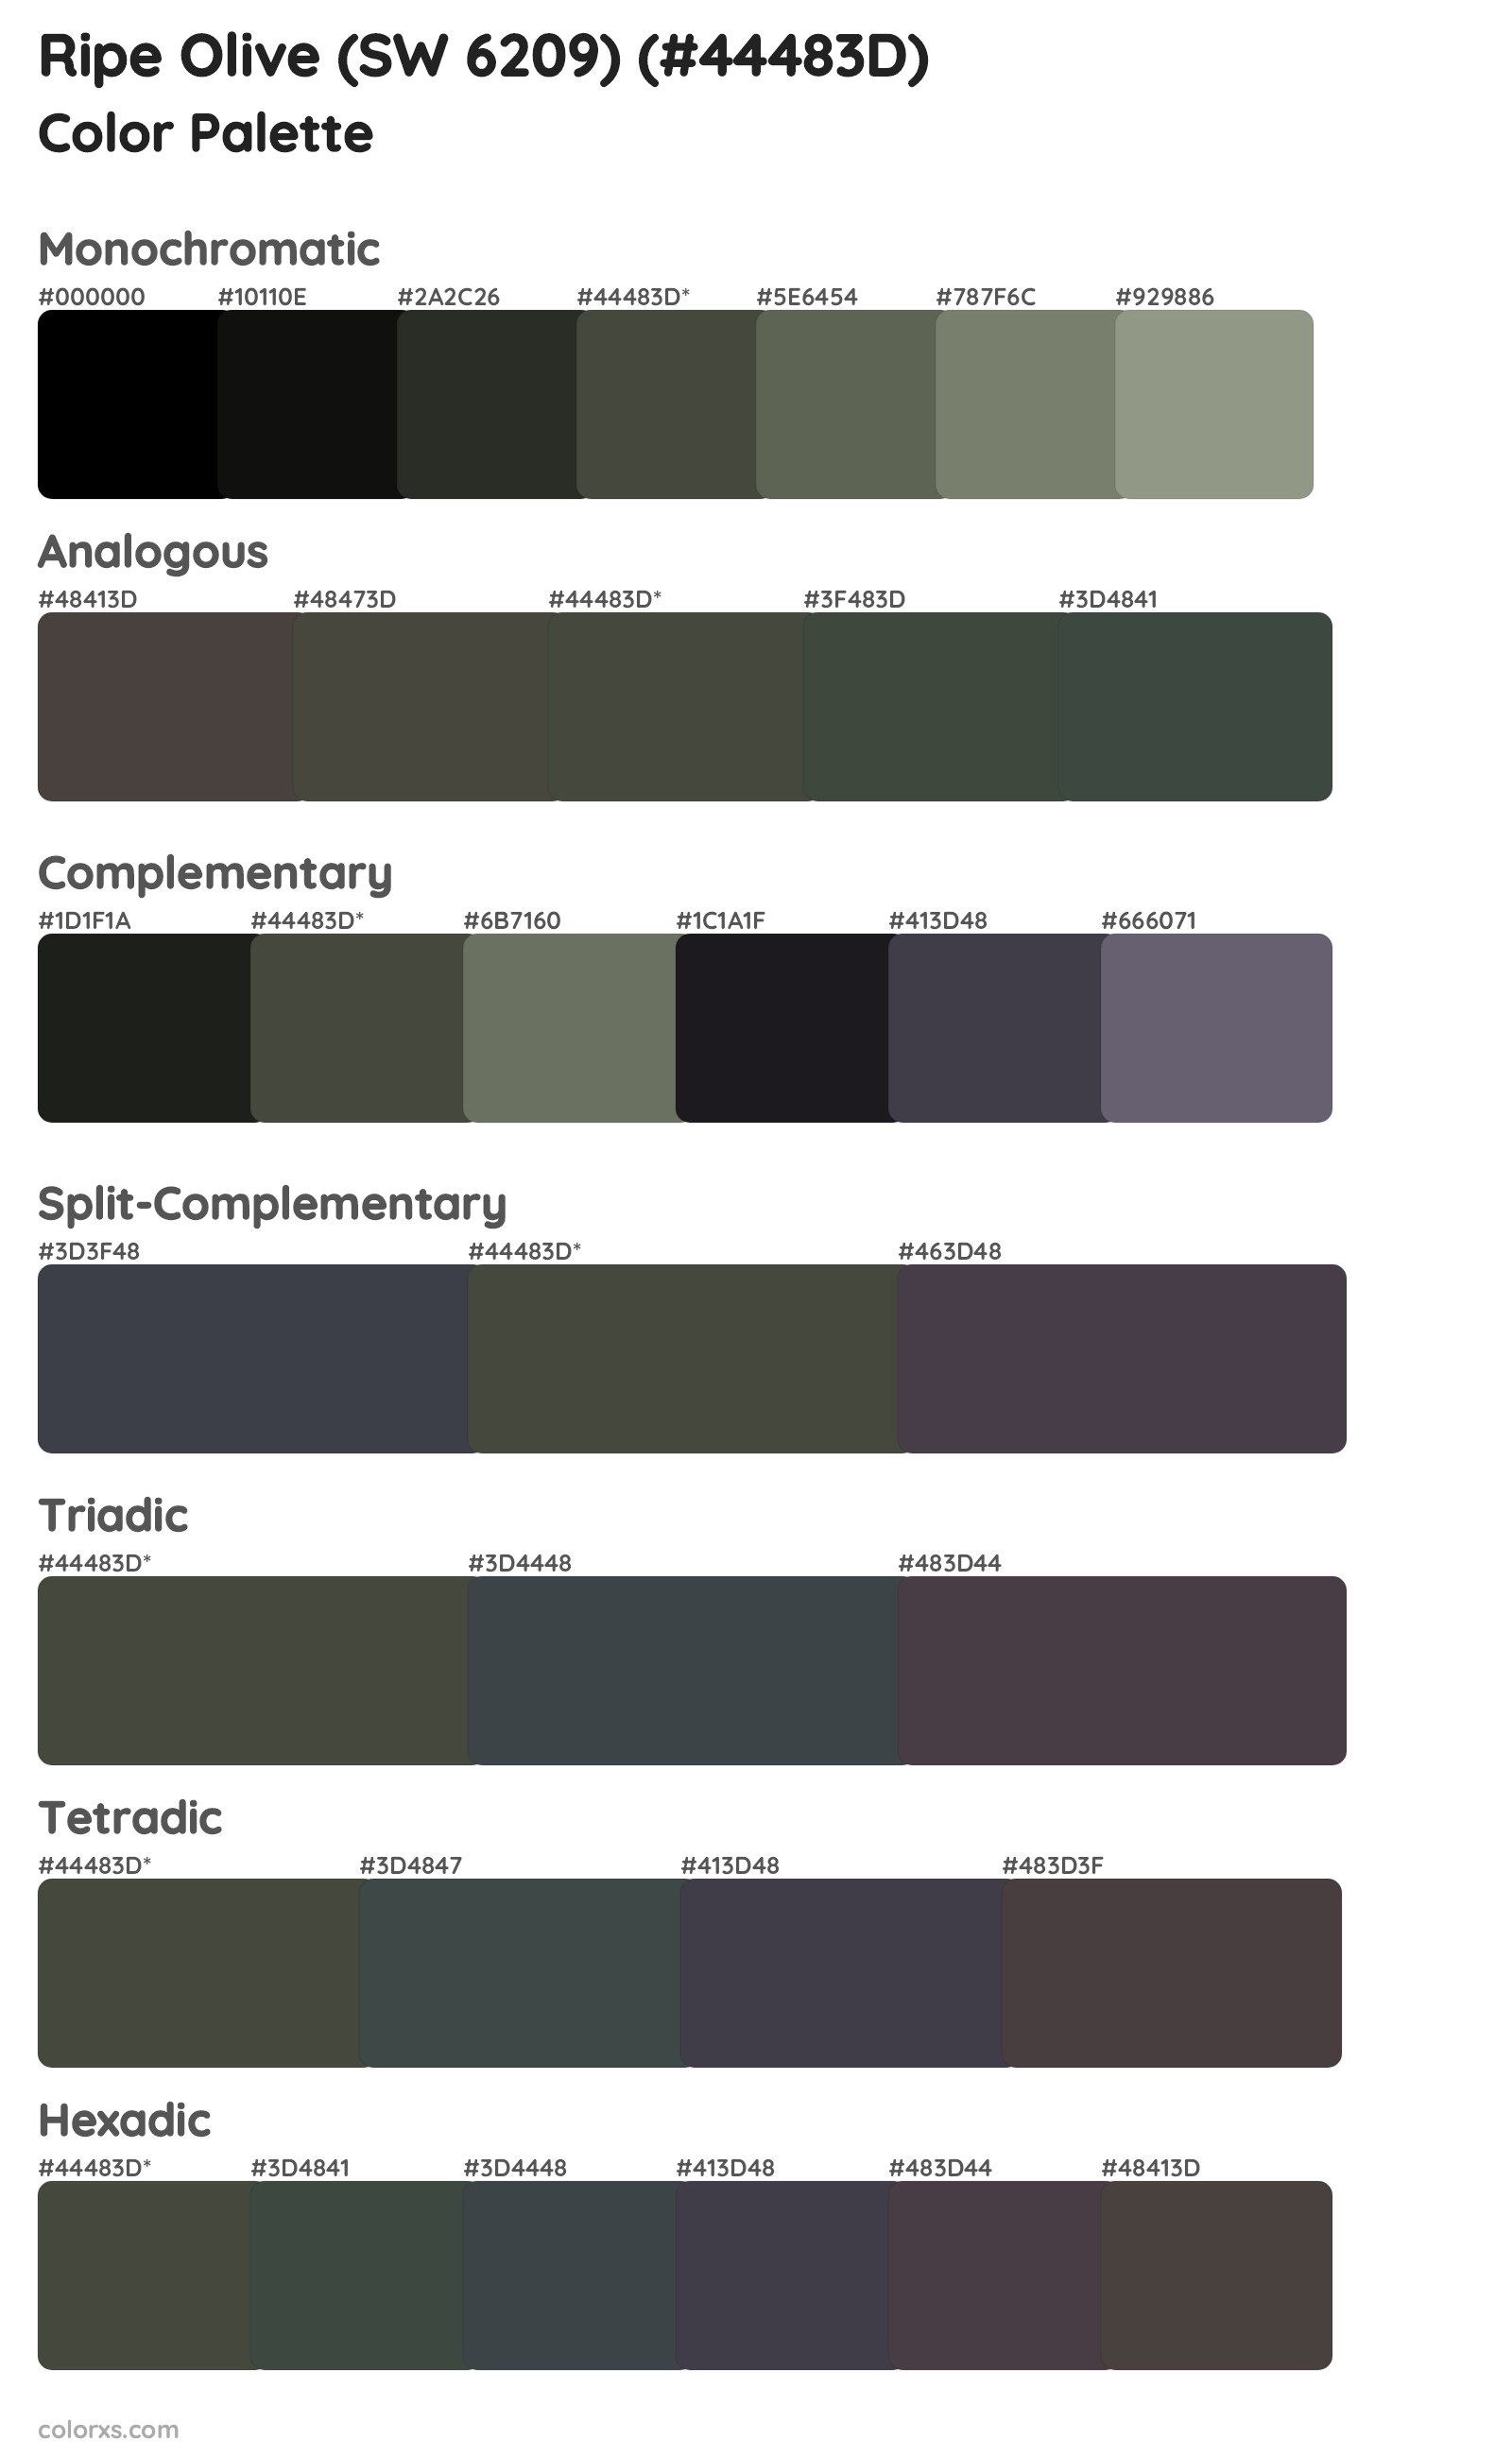 Ripe Olive (SW 6209) Color Scheme Palettes